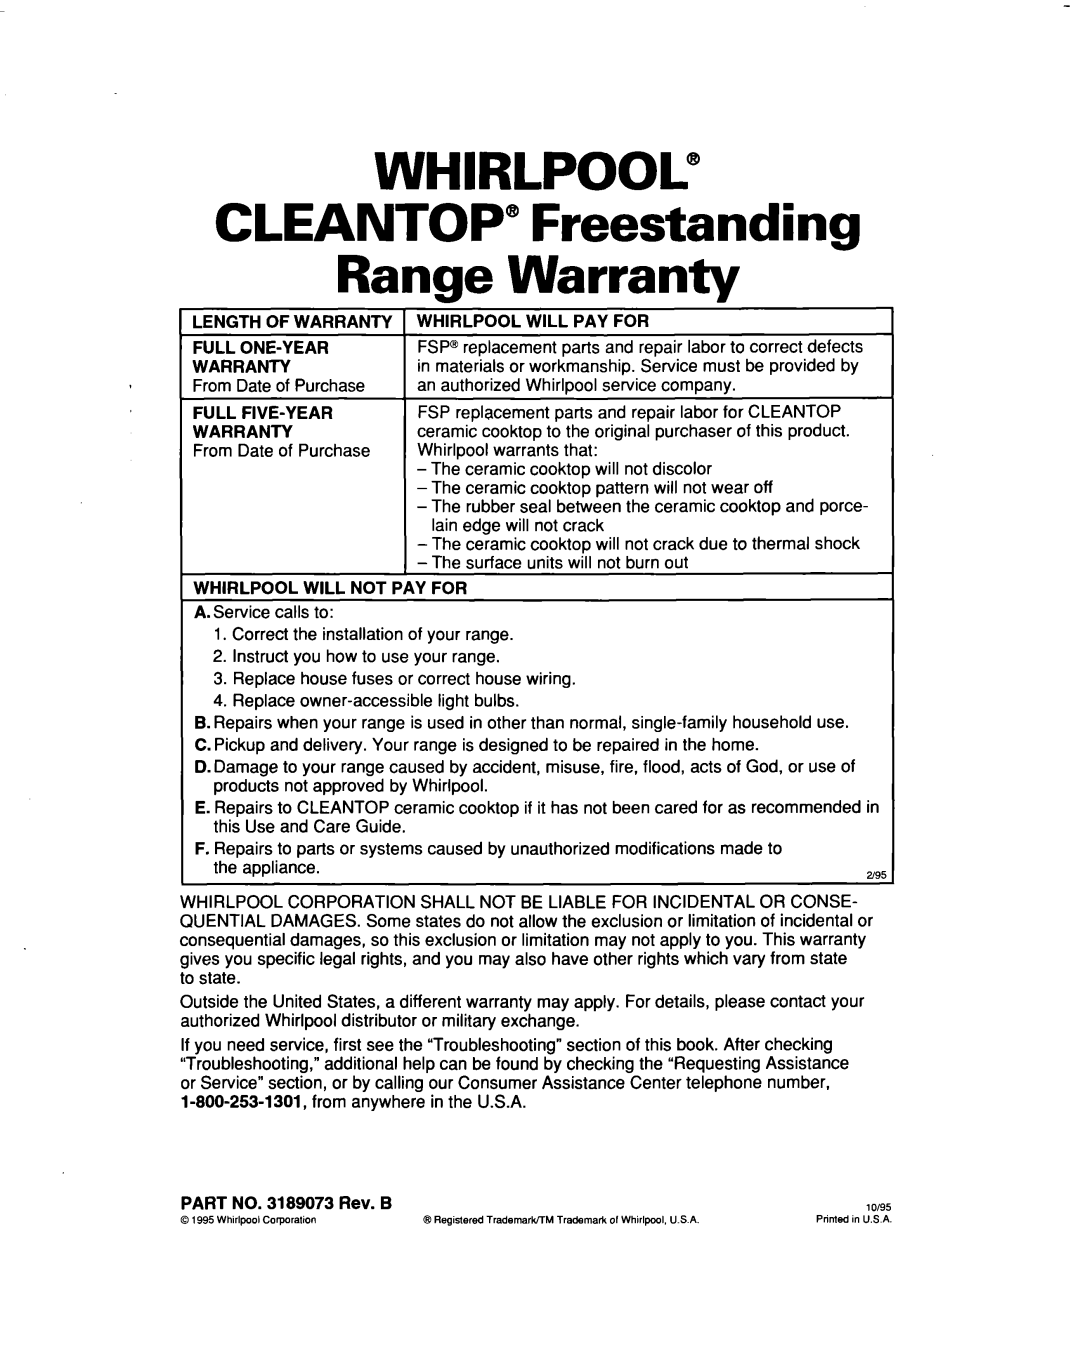 Whirlpool RF386PXD warranty WHIRLPOOL@ CLEANTOP” Freestanding Range Warranty 